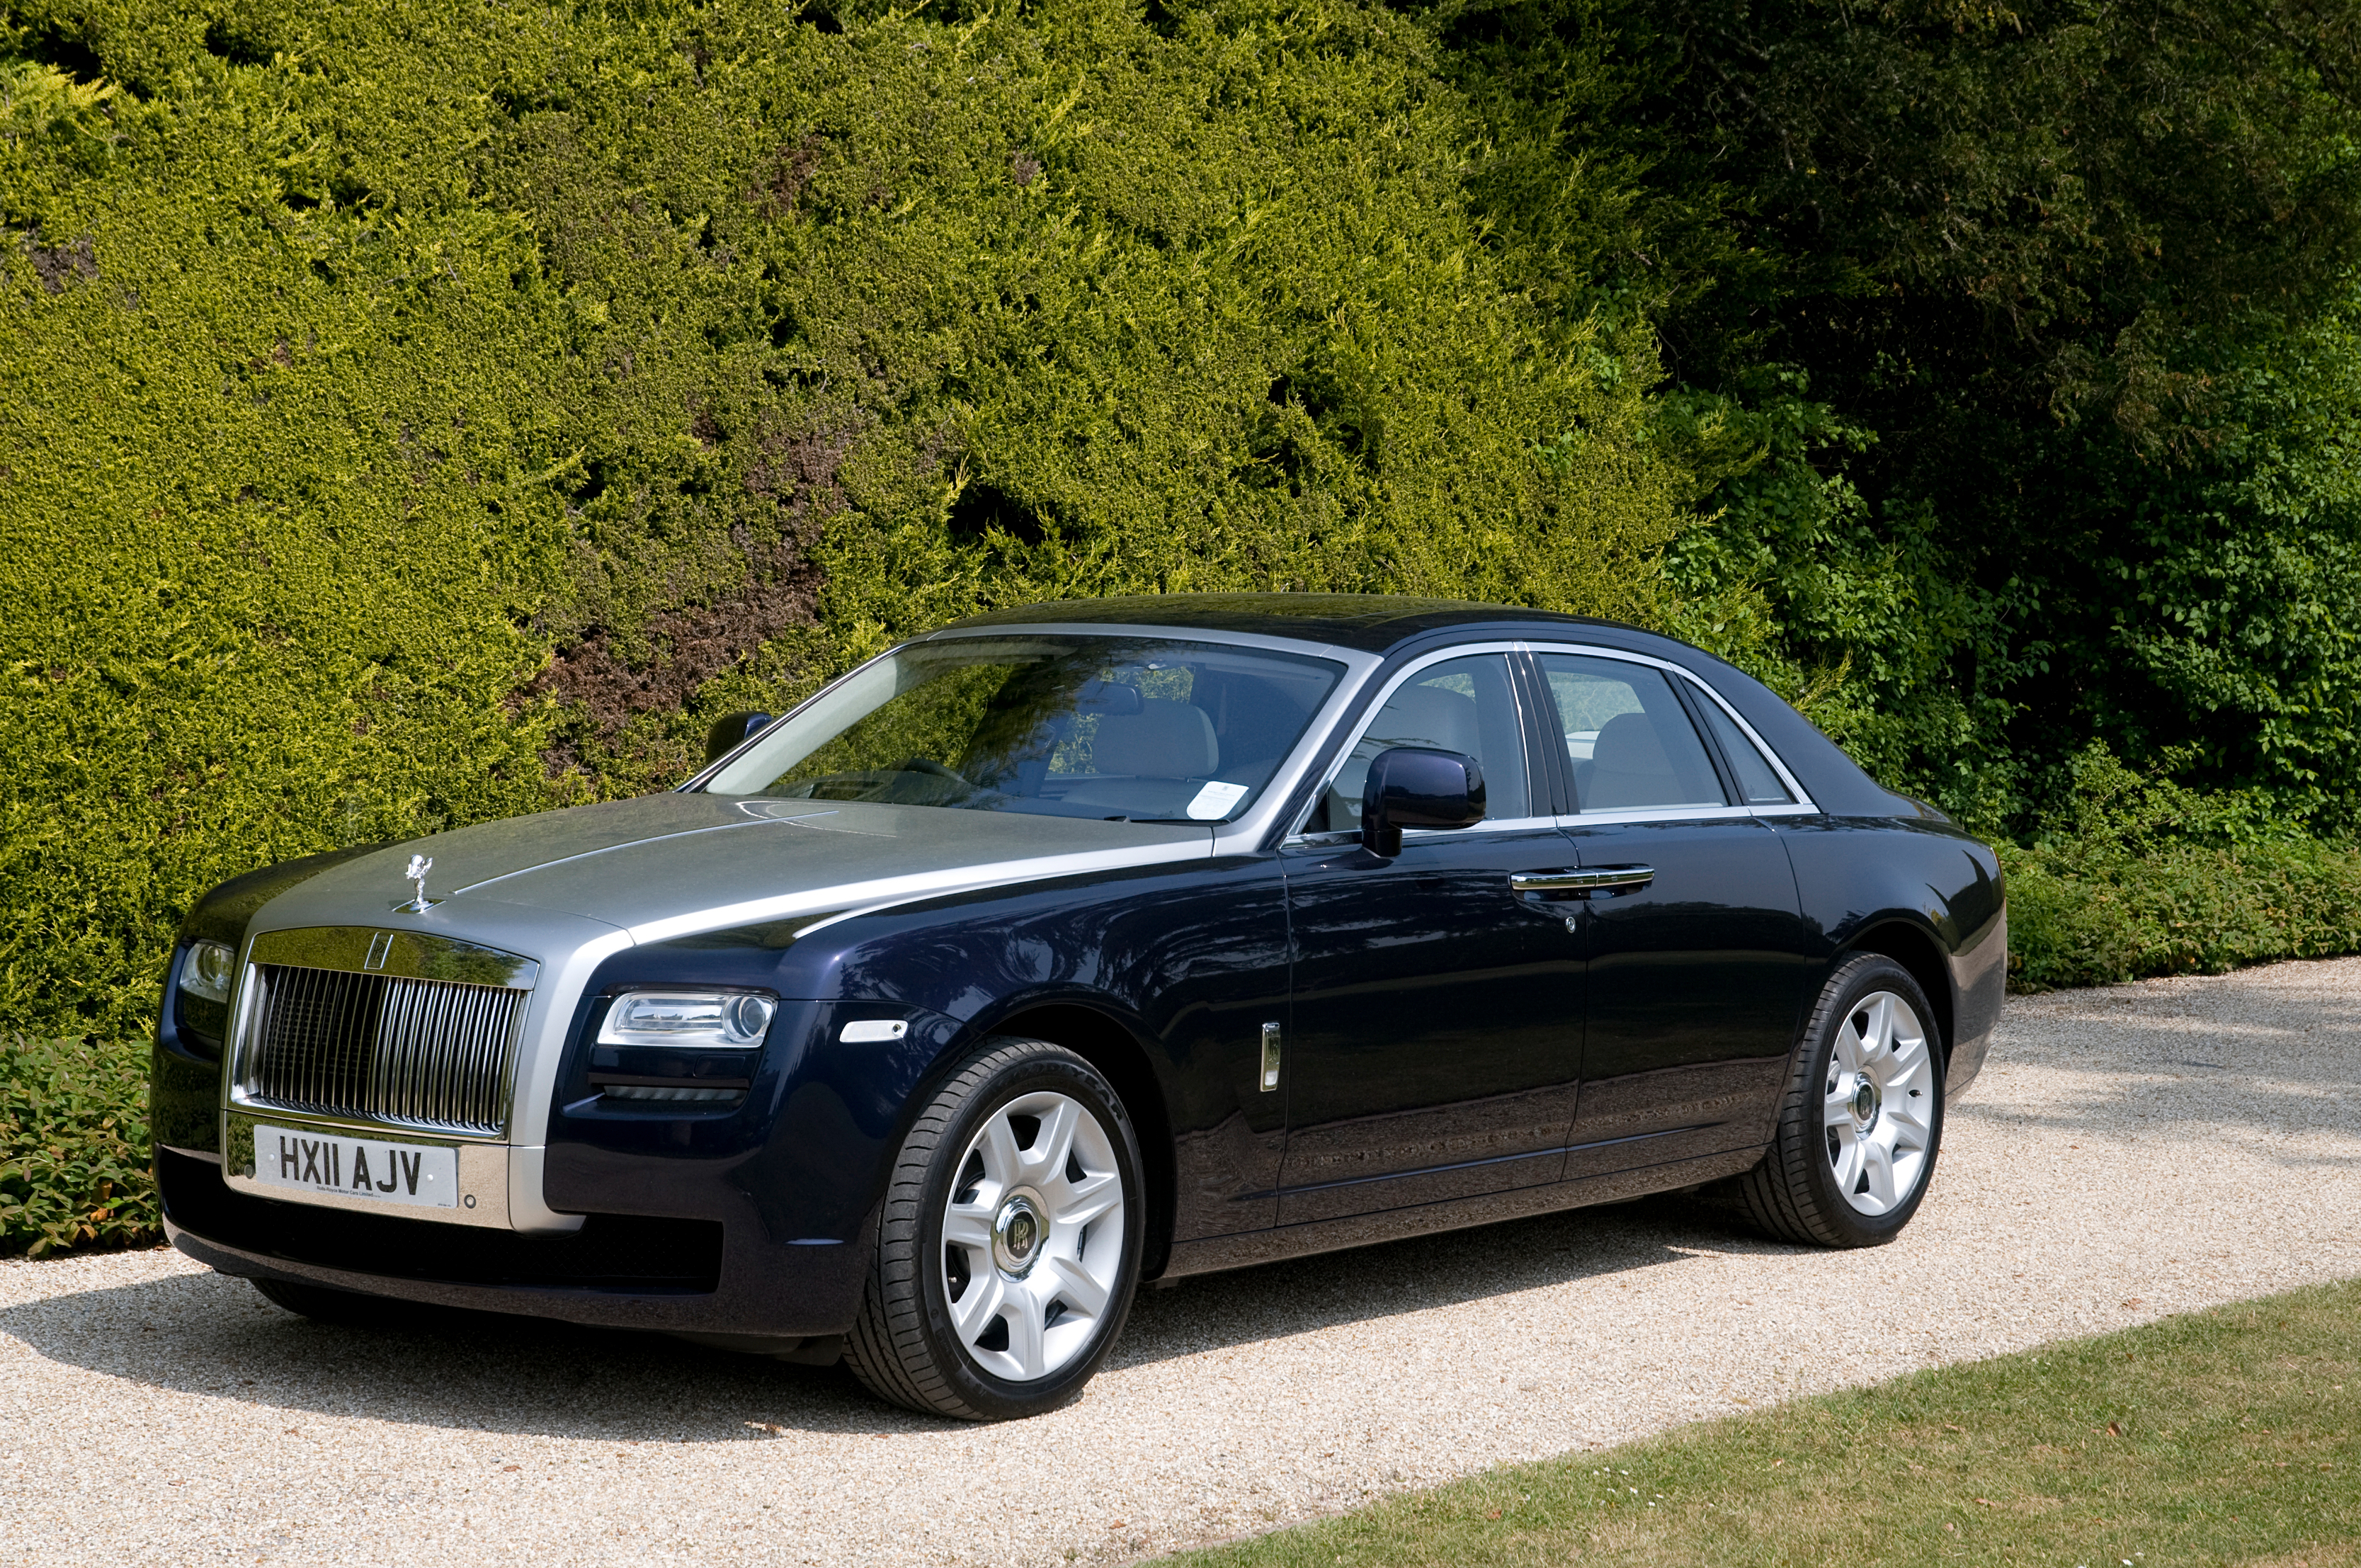 A Rolls-Royce